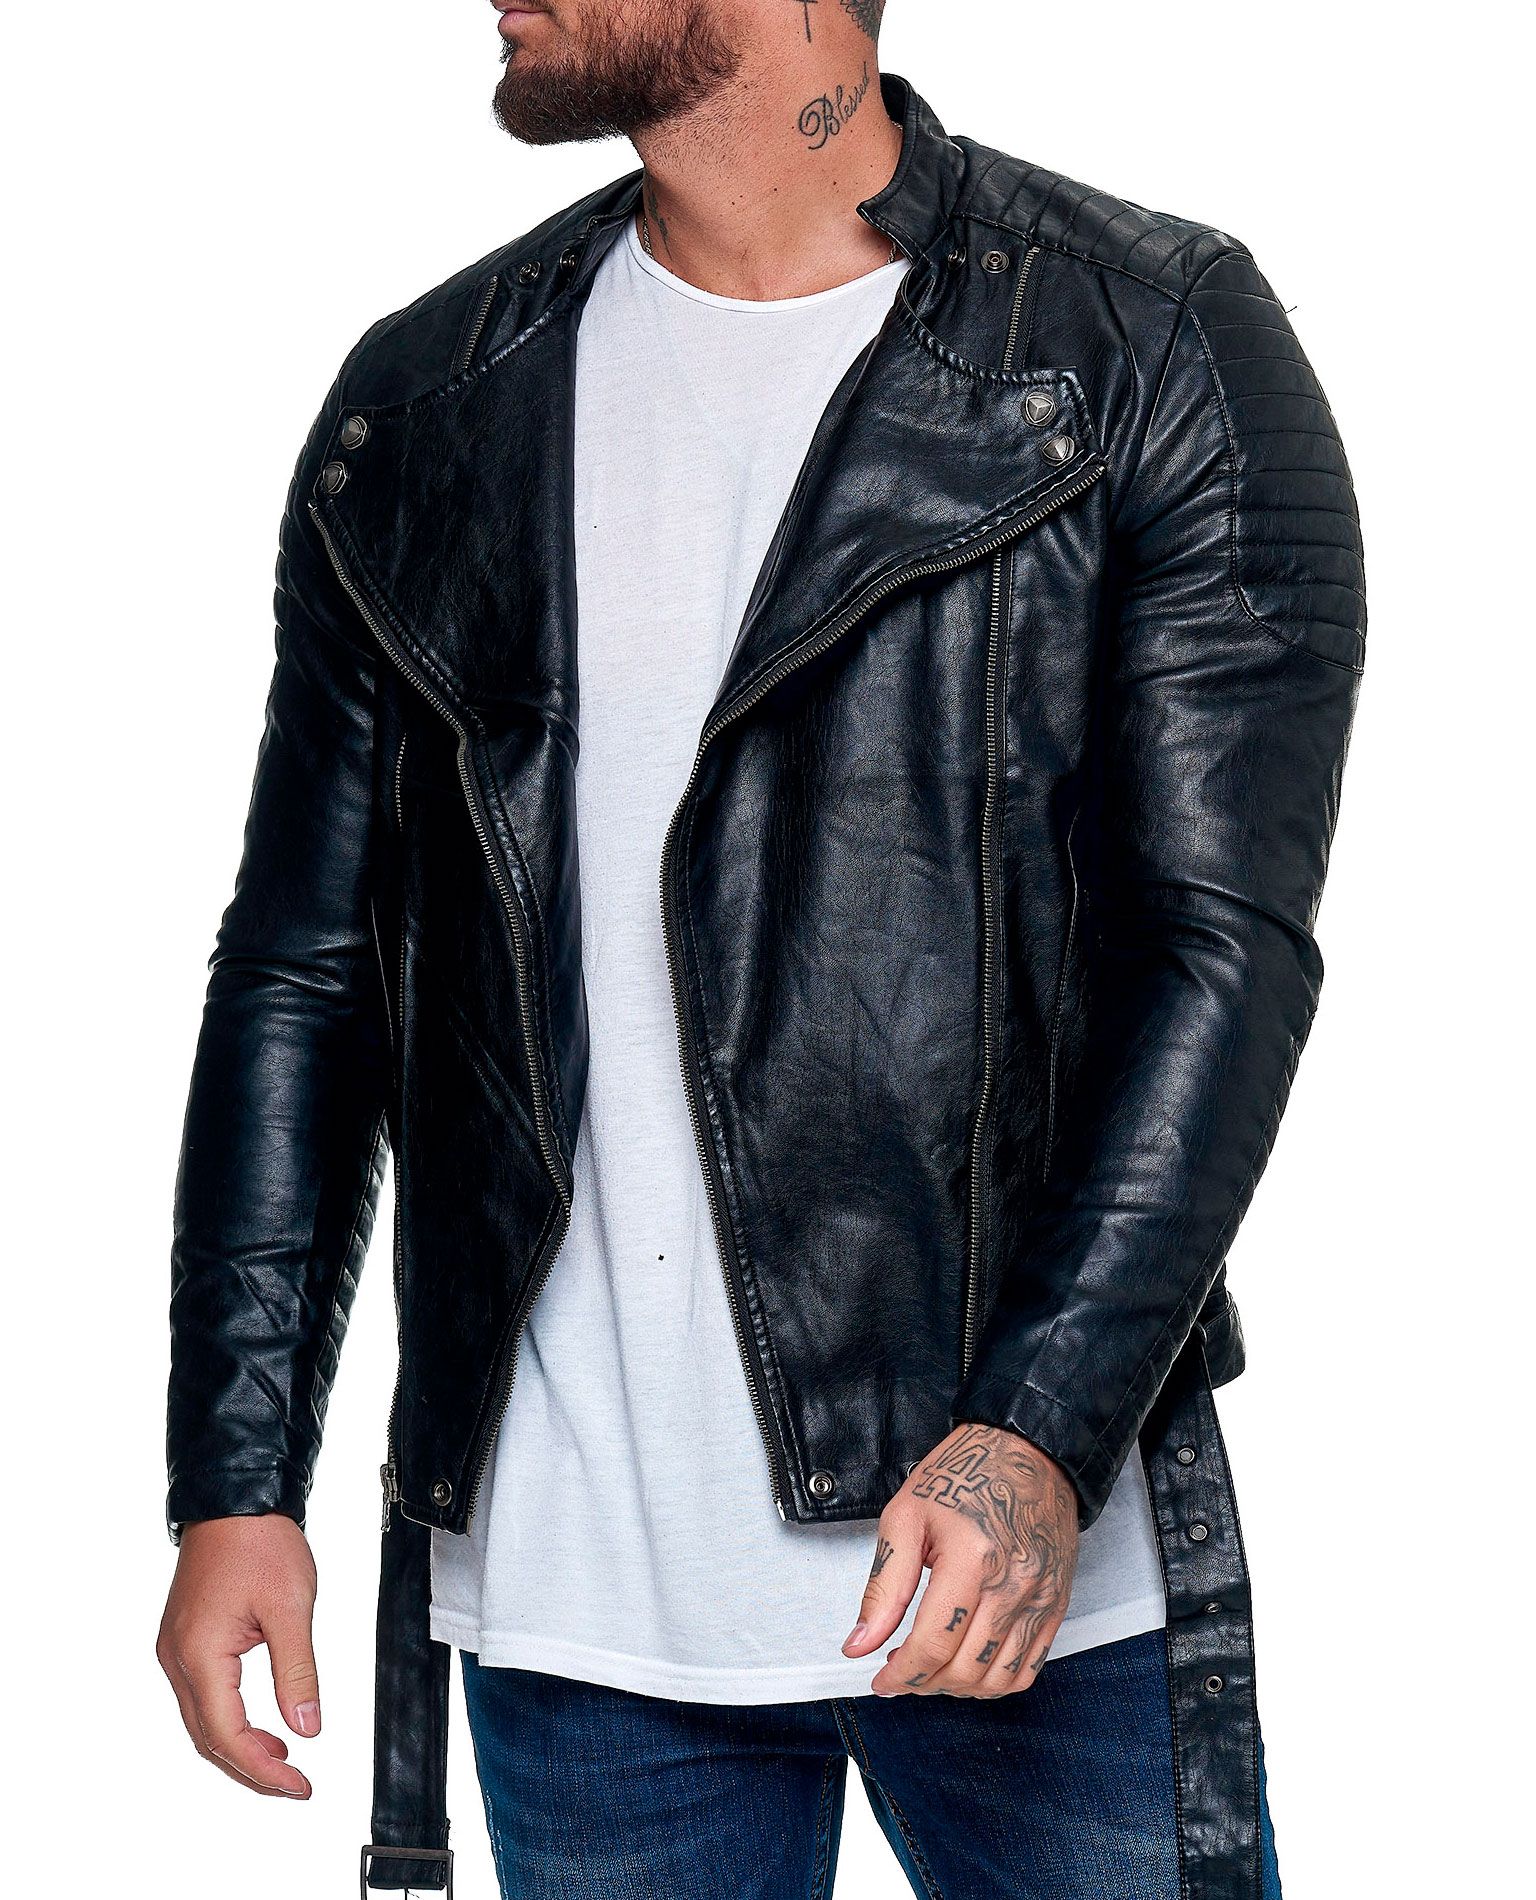 Jacob Faux Leather Jacket Jerone - 1028 - Leather Jackets - Jerone